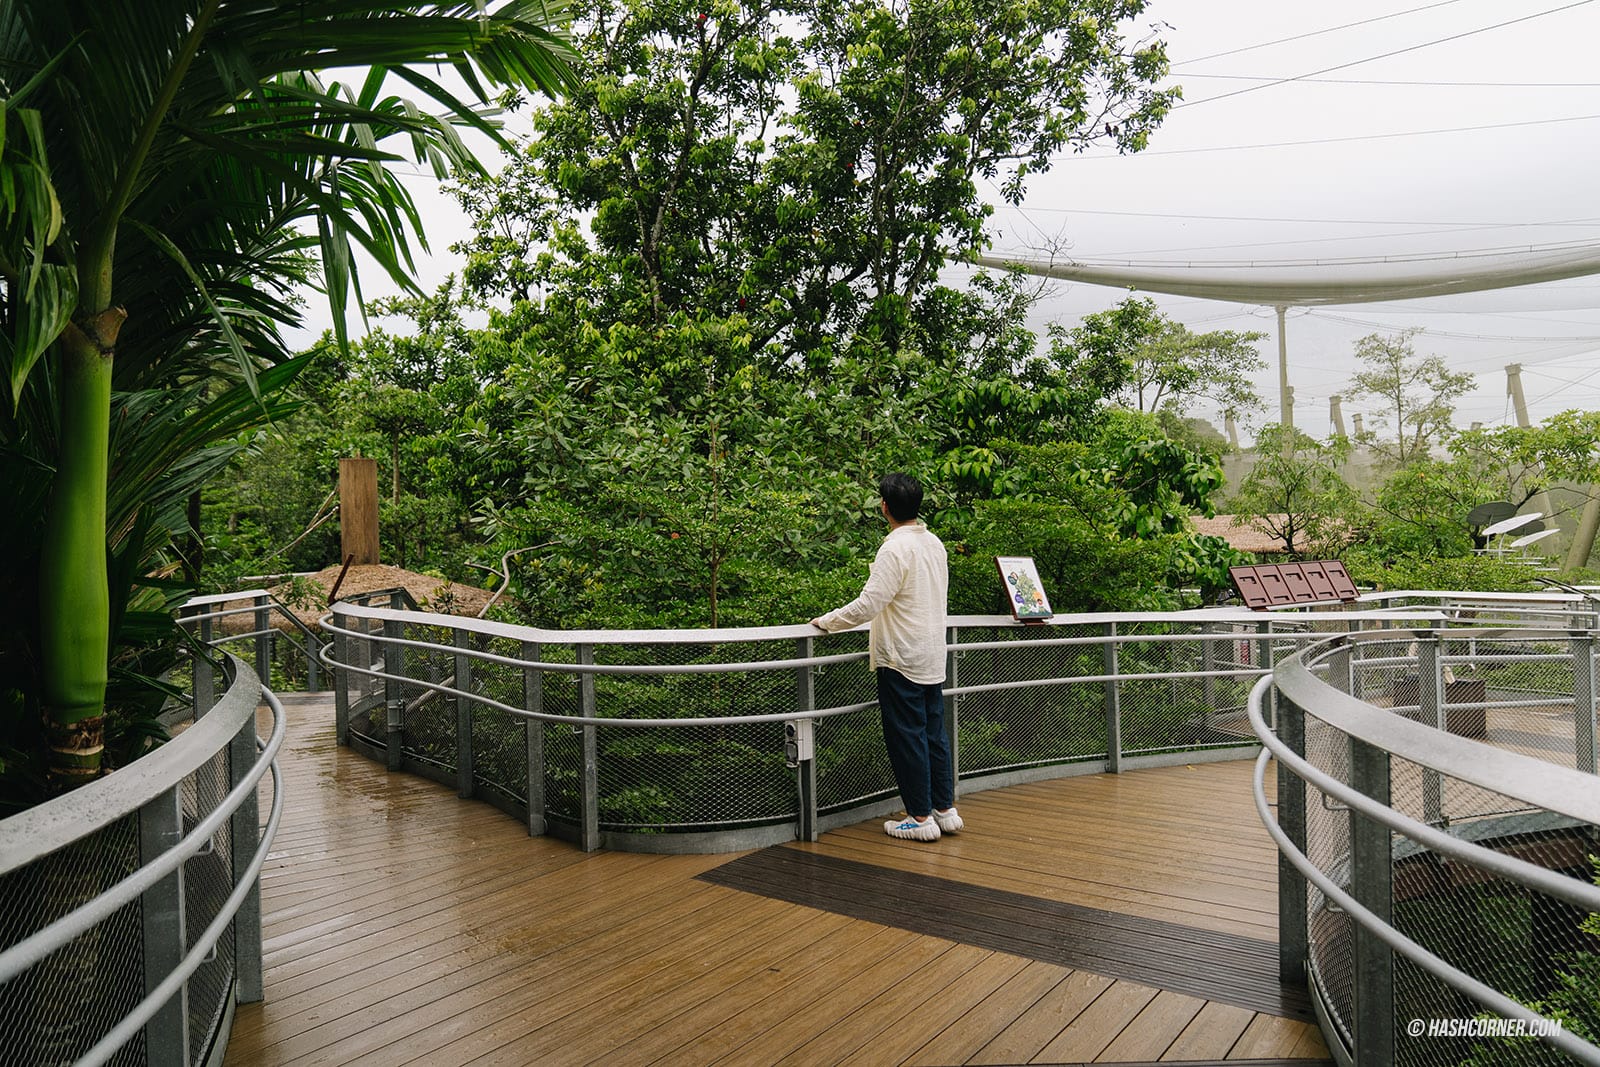 รีวิว Bird Paradise x สิงคโปร์ เที่ยวสวนนกใหญ่ที่สุดในเอเชีย